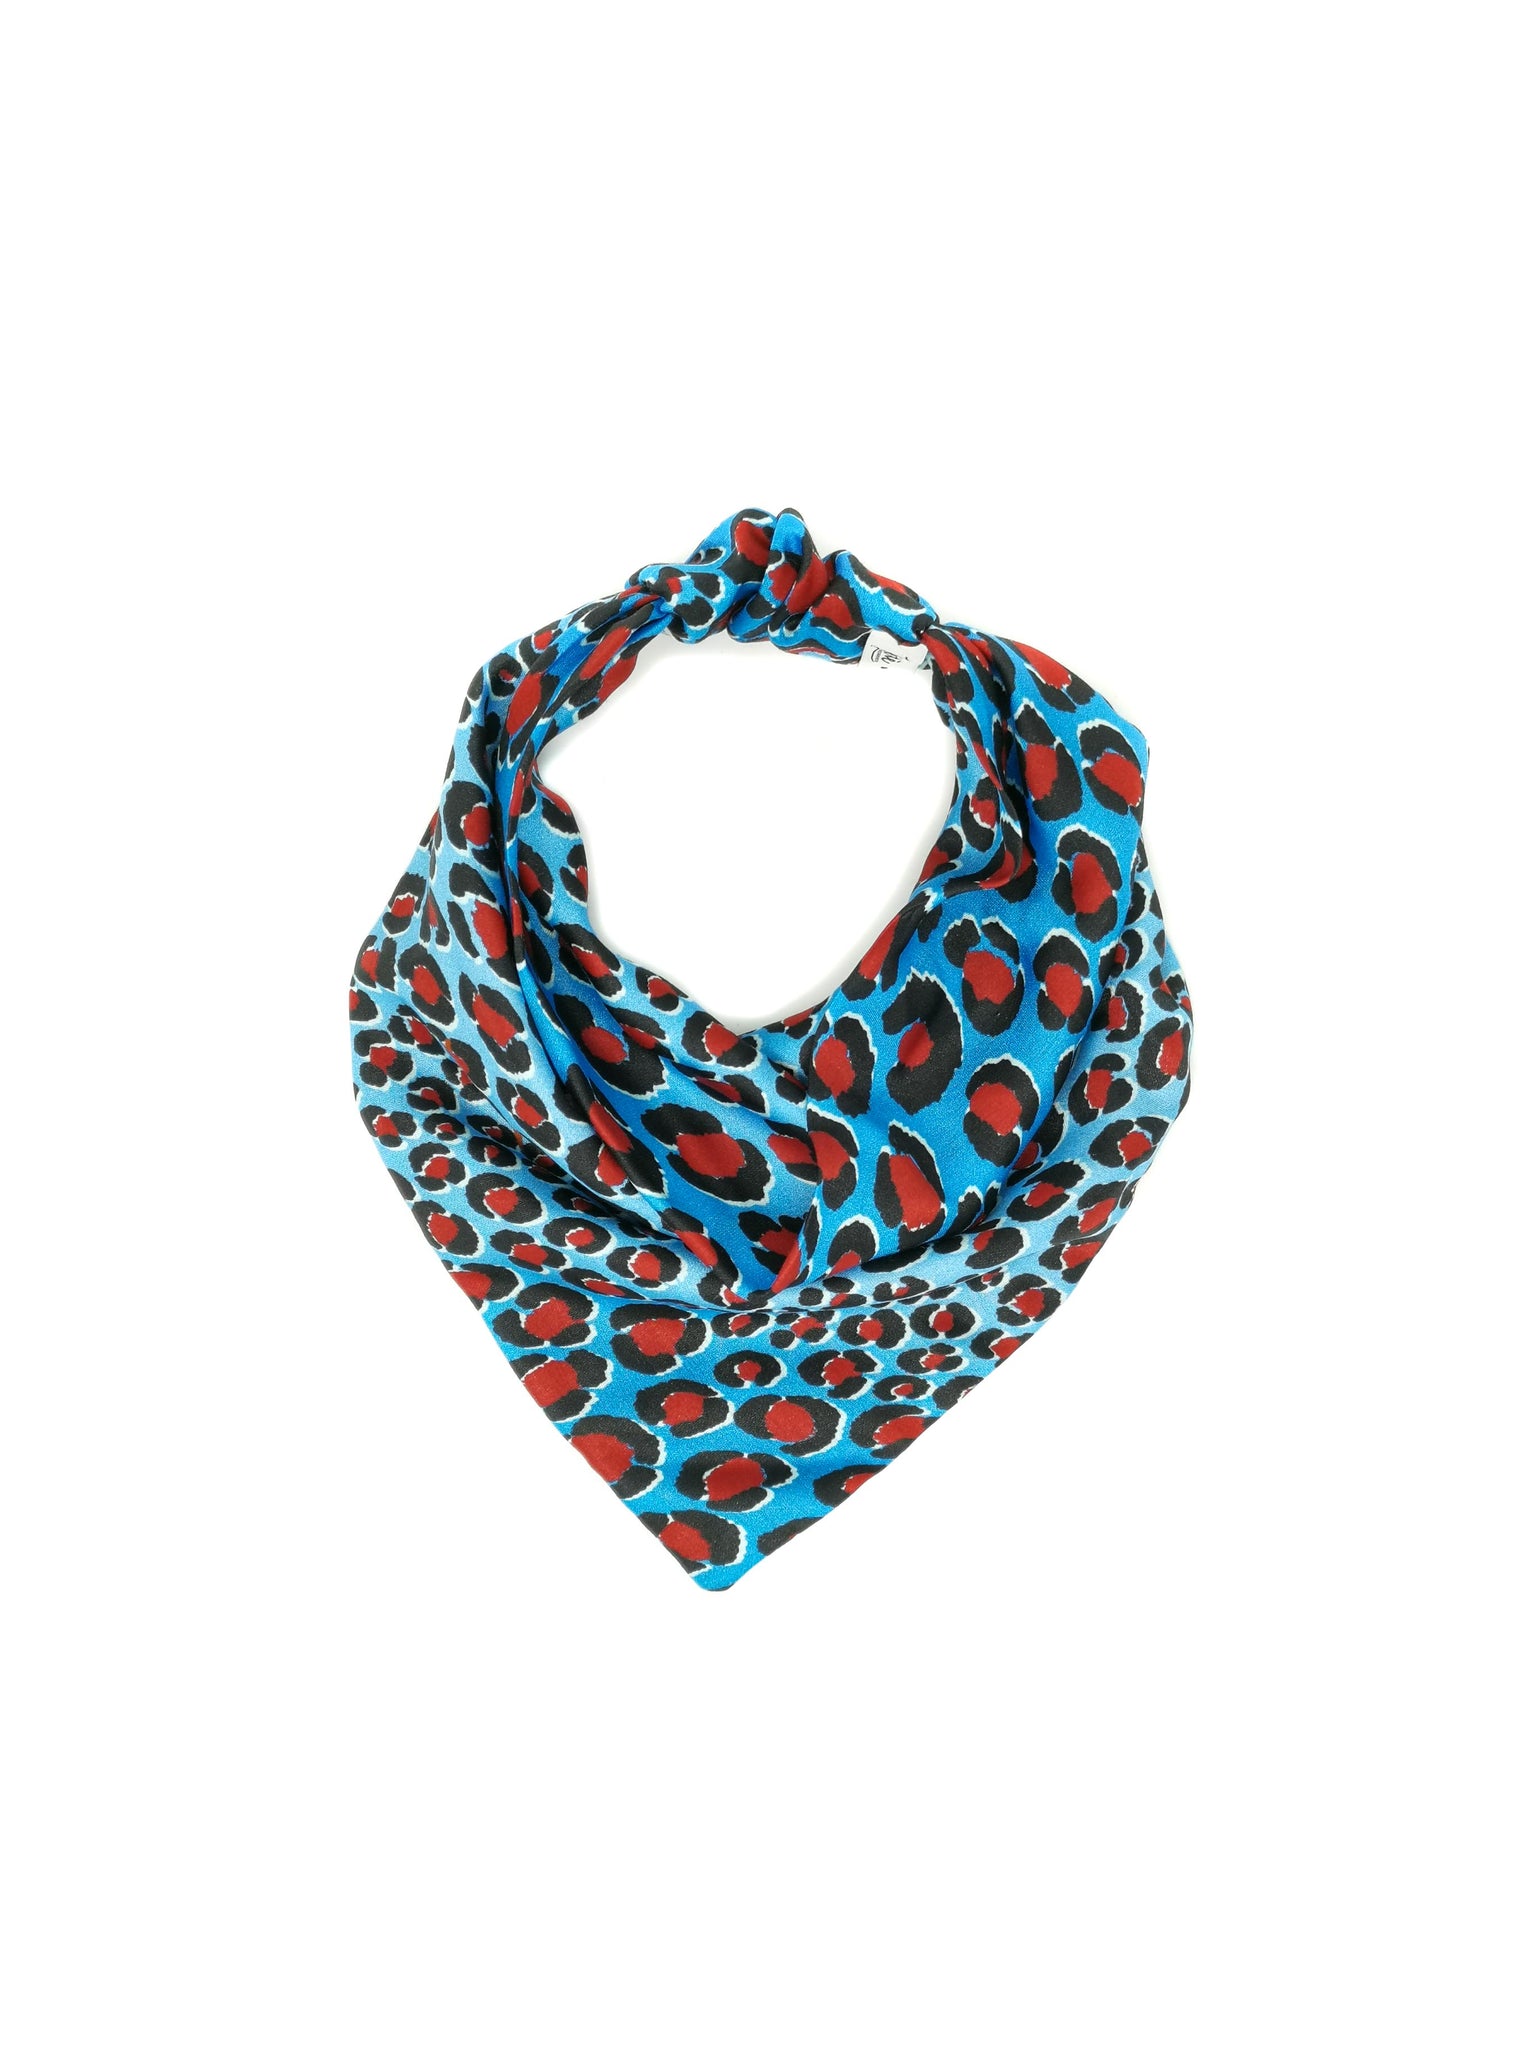 Bandana foulard in viscosa fantasia leopardata